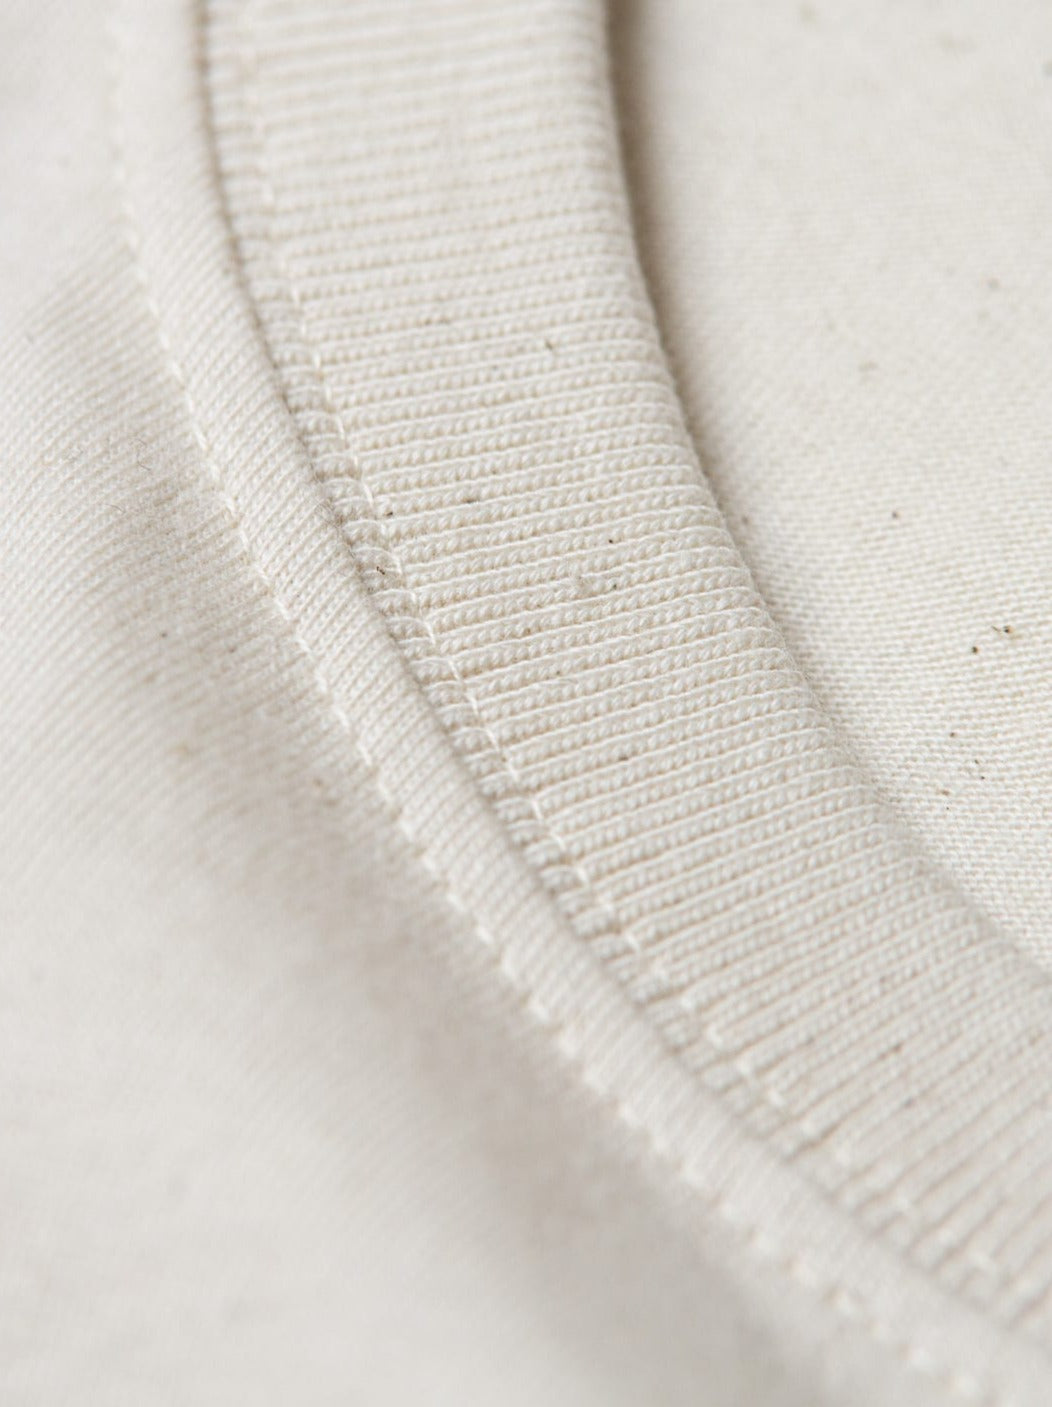 Detailansicht vom Kragen eines nachhaltiges FUXBAU Fair Fashion schweren Basic T-Shirt in Natur aus Biobaumwolle.